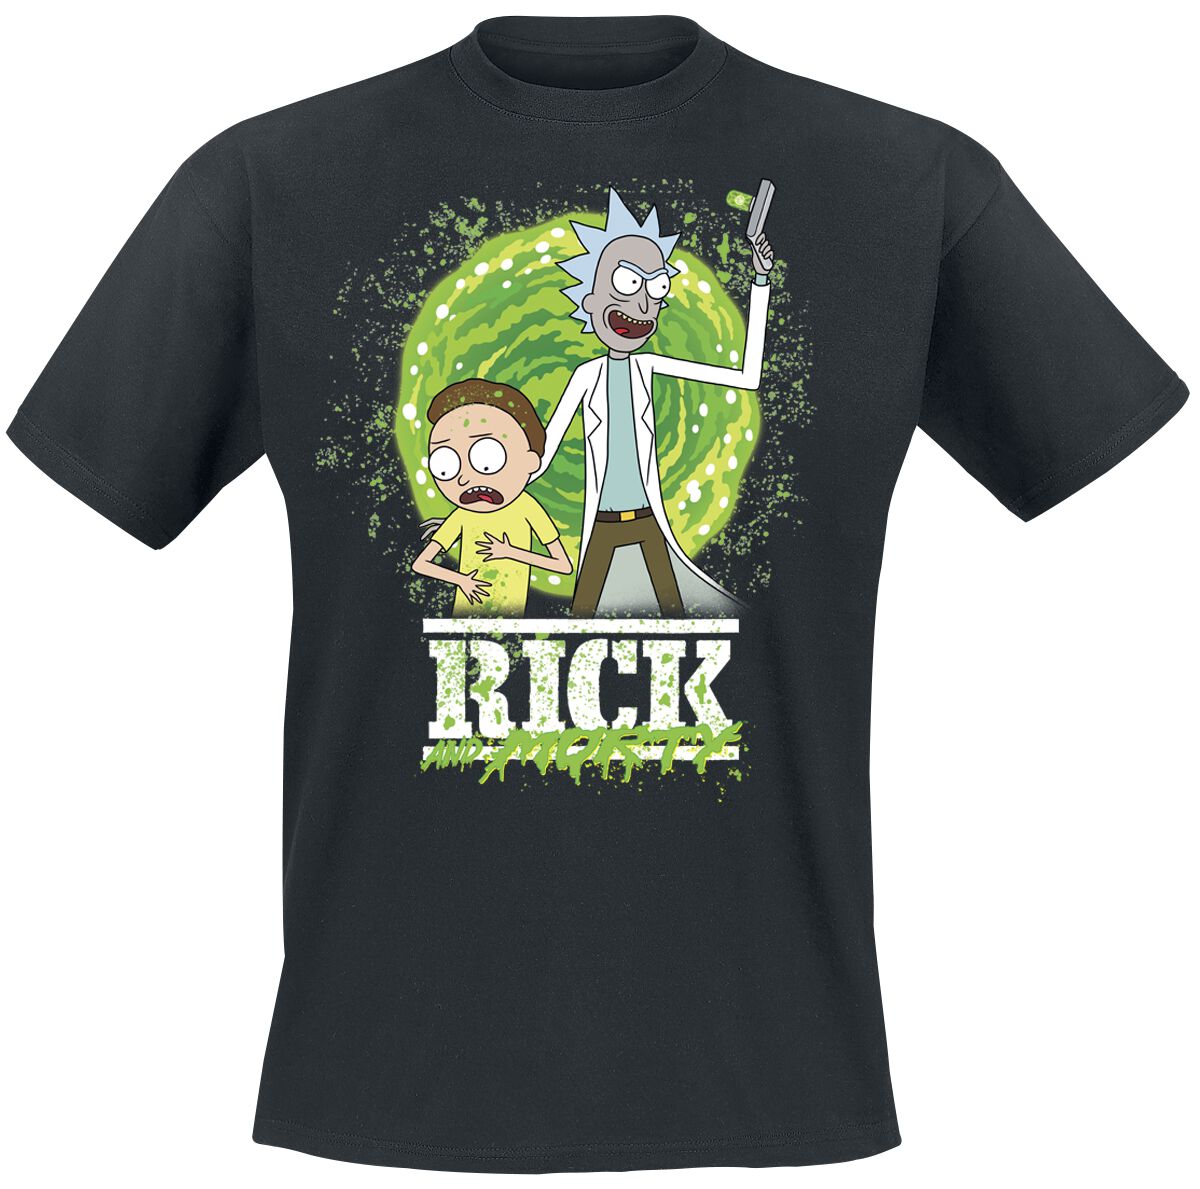 Rick And Morty T-Shirt - Season 6 - S bis XXL - für Männer - Größe M - schwarz  - Lizenzierter Fanartikel